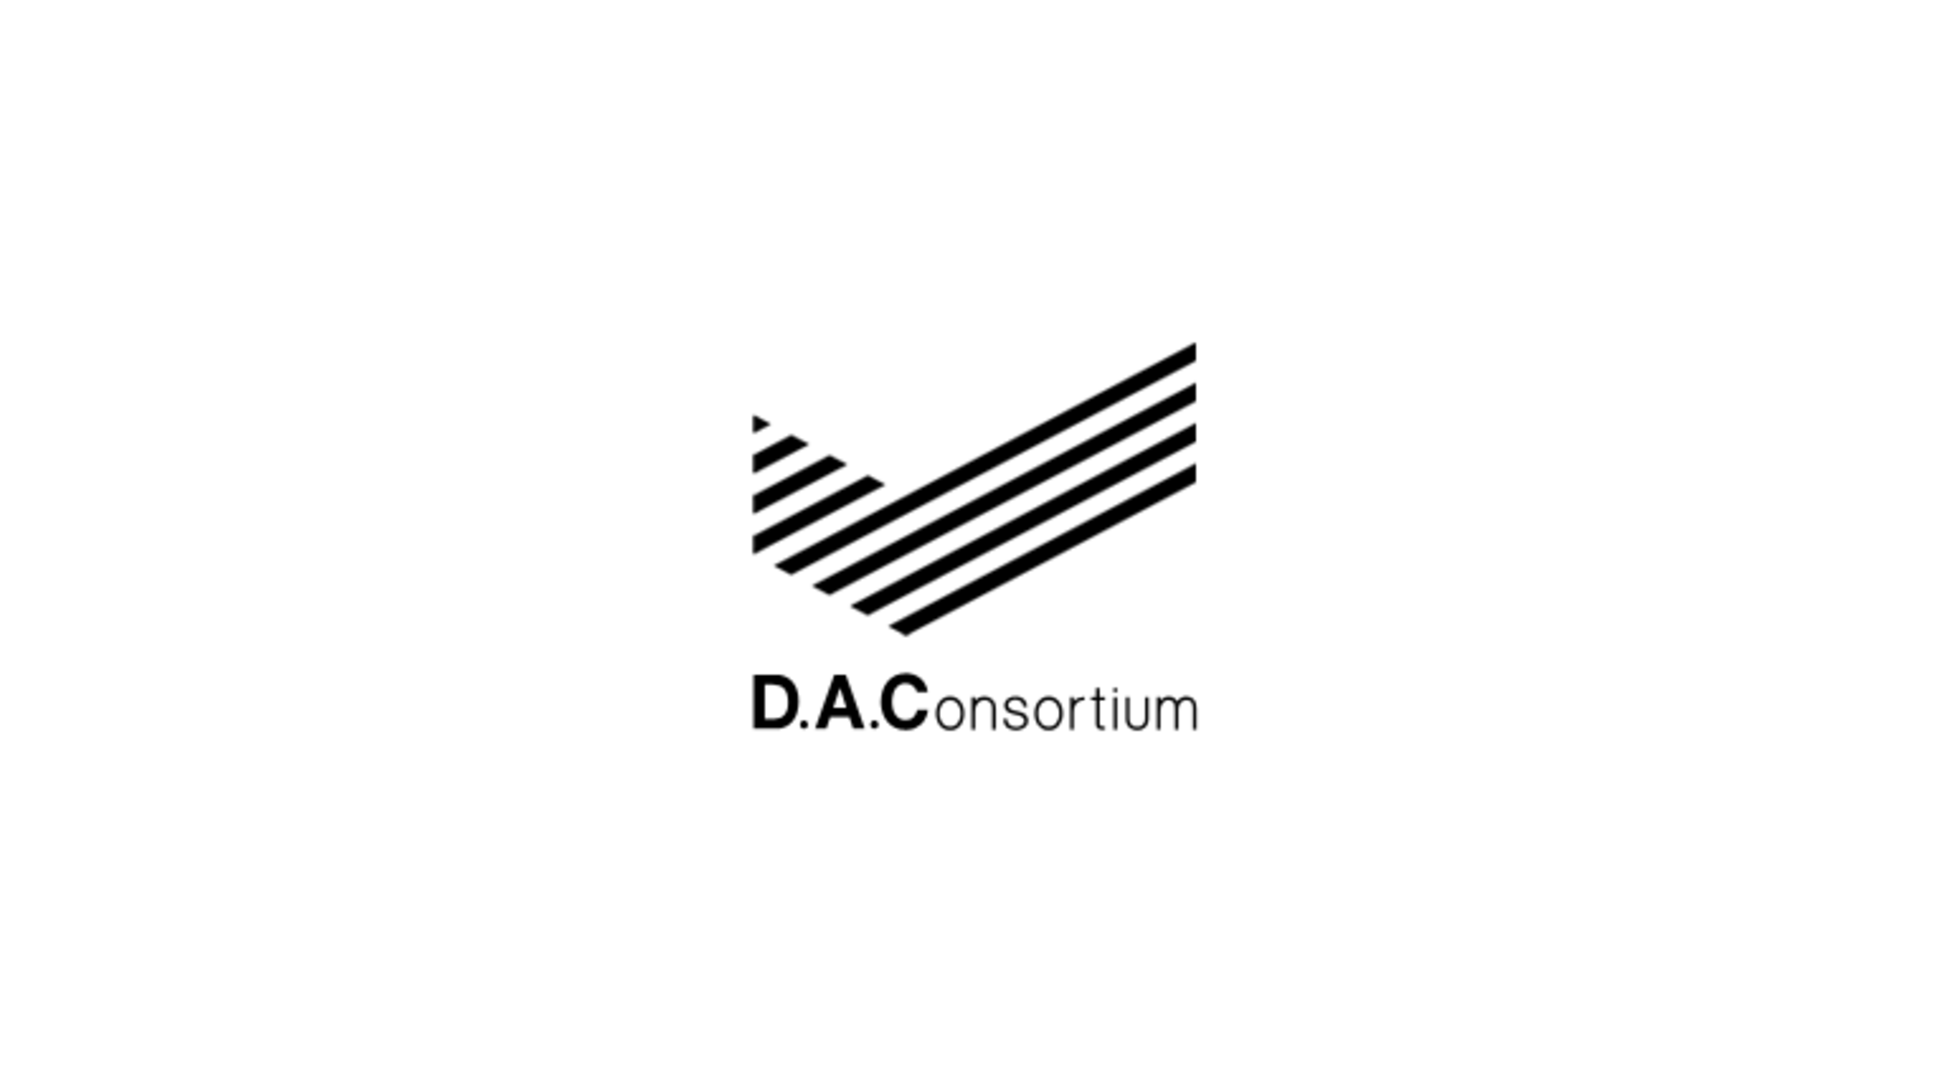 DAC、デジタル活用による屋外・交通広告効果測定に関する特許を取得